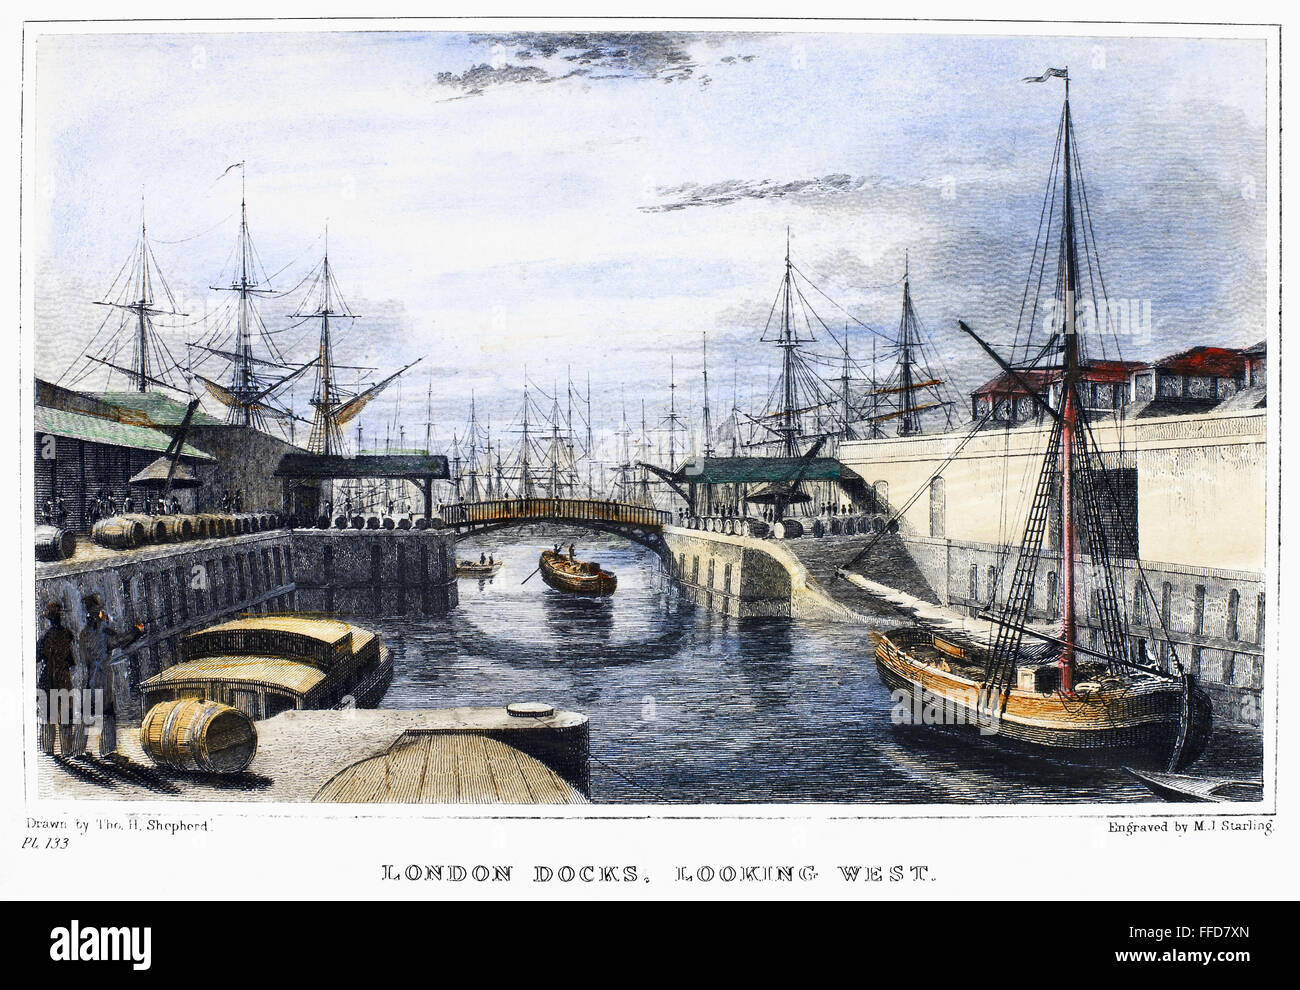 ENGLAND: LONDON, 1831. /Nview der London Docks, Blick nach Westen. Stahl Stich, Englisch, 1831, nach Thomas Shepherd. Stockfoto